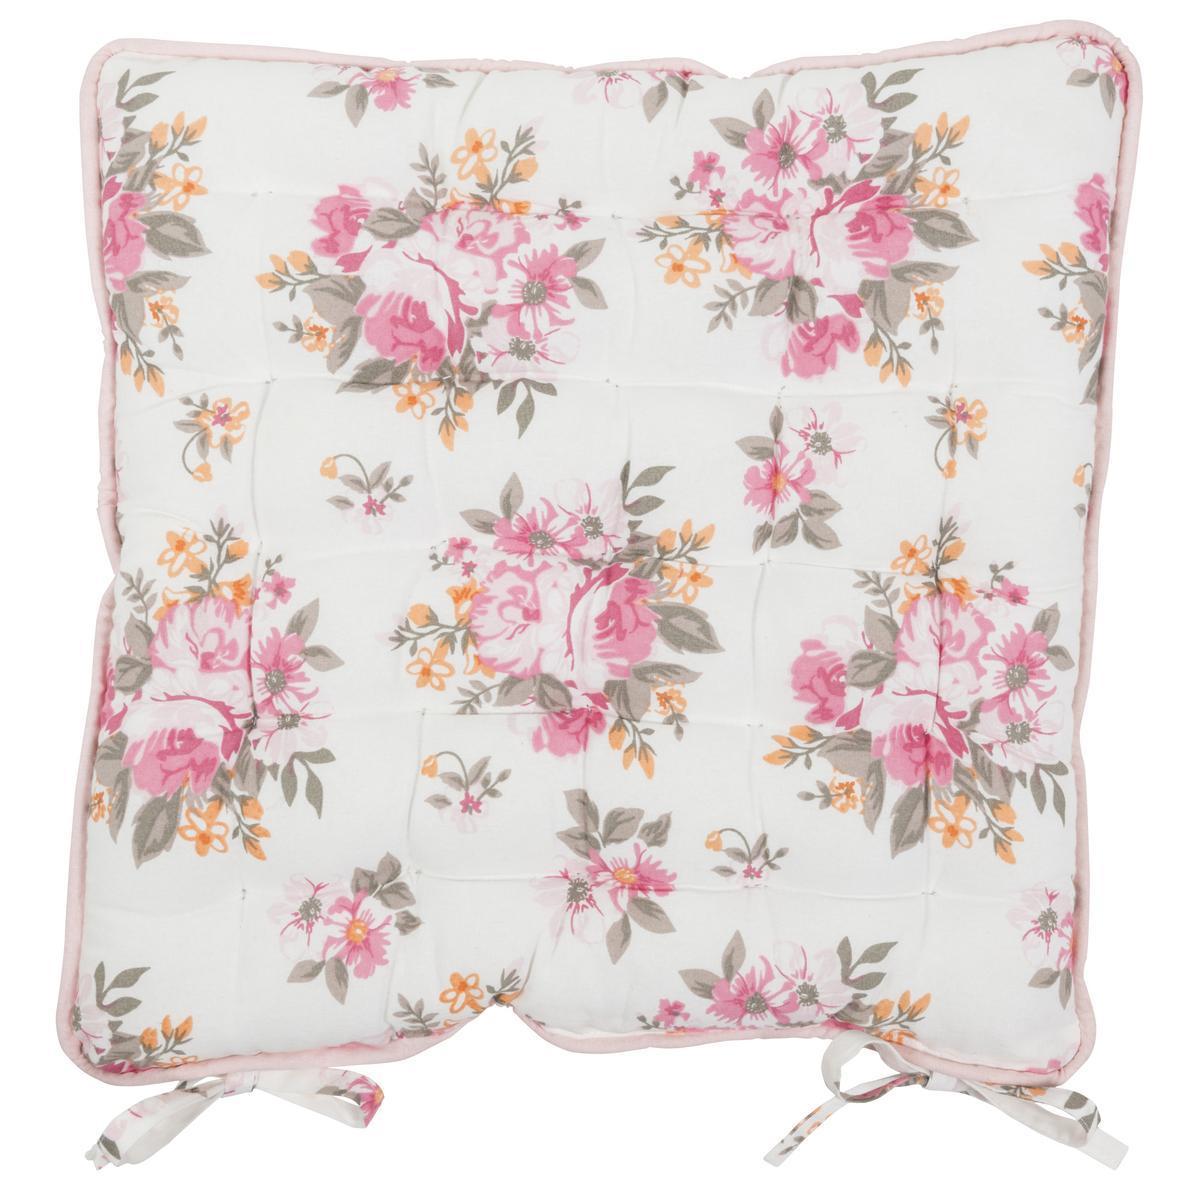 Galette de chaise 'floral' - 100 % coton - 40 x 40 cm - Blanc cassé et rose